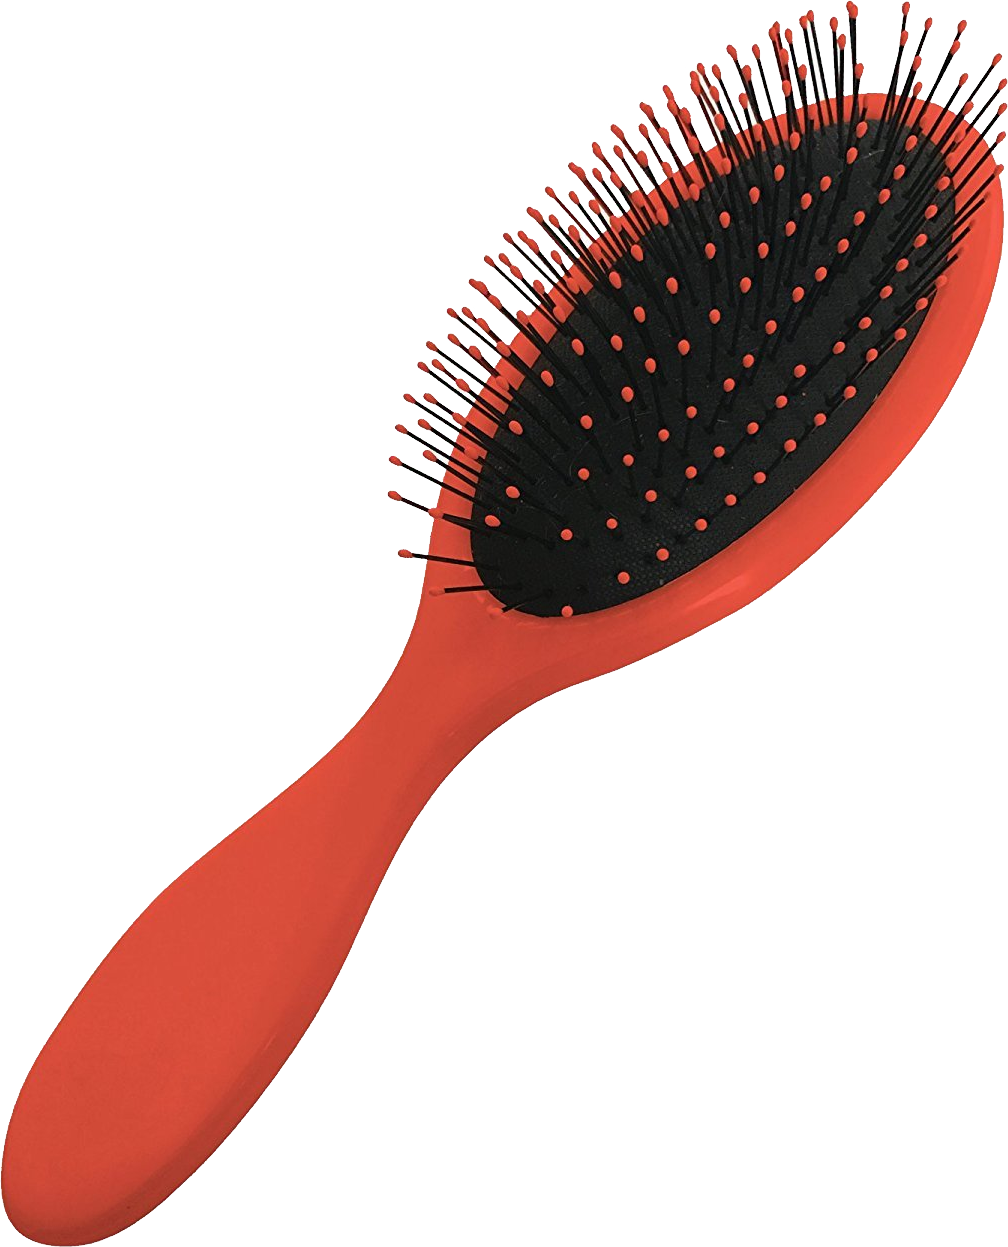 Hairbrush clipart round brush, Hairbrush round brush Transparent FREE